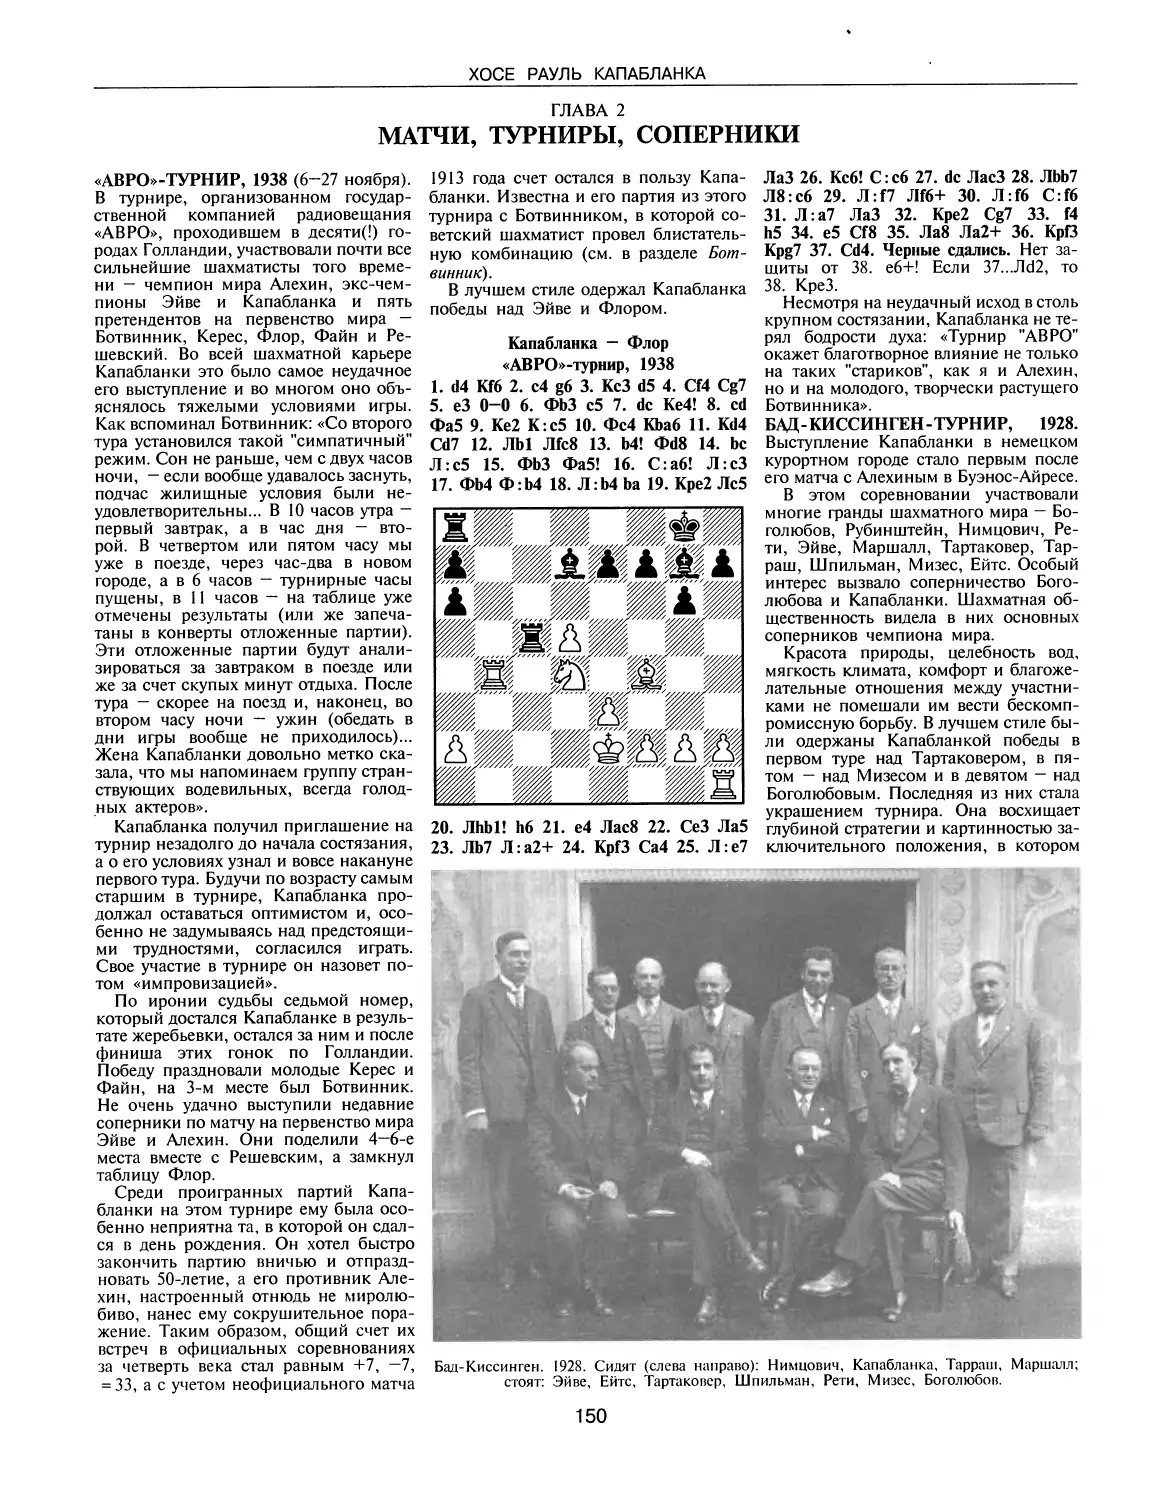 ГЛАВА 2. Матчи, турниры, соперники
Бад-Киссинген-турнир, 1928